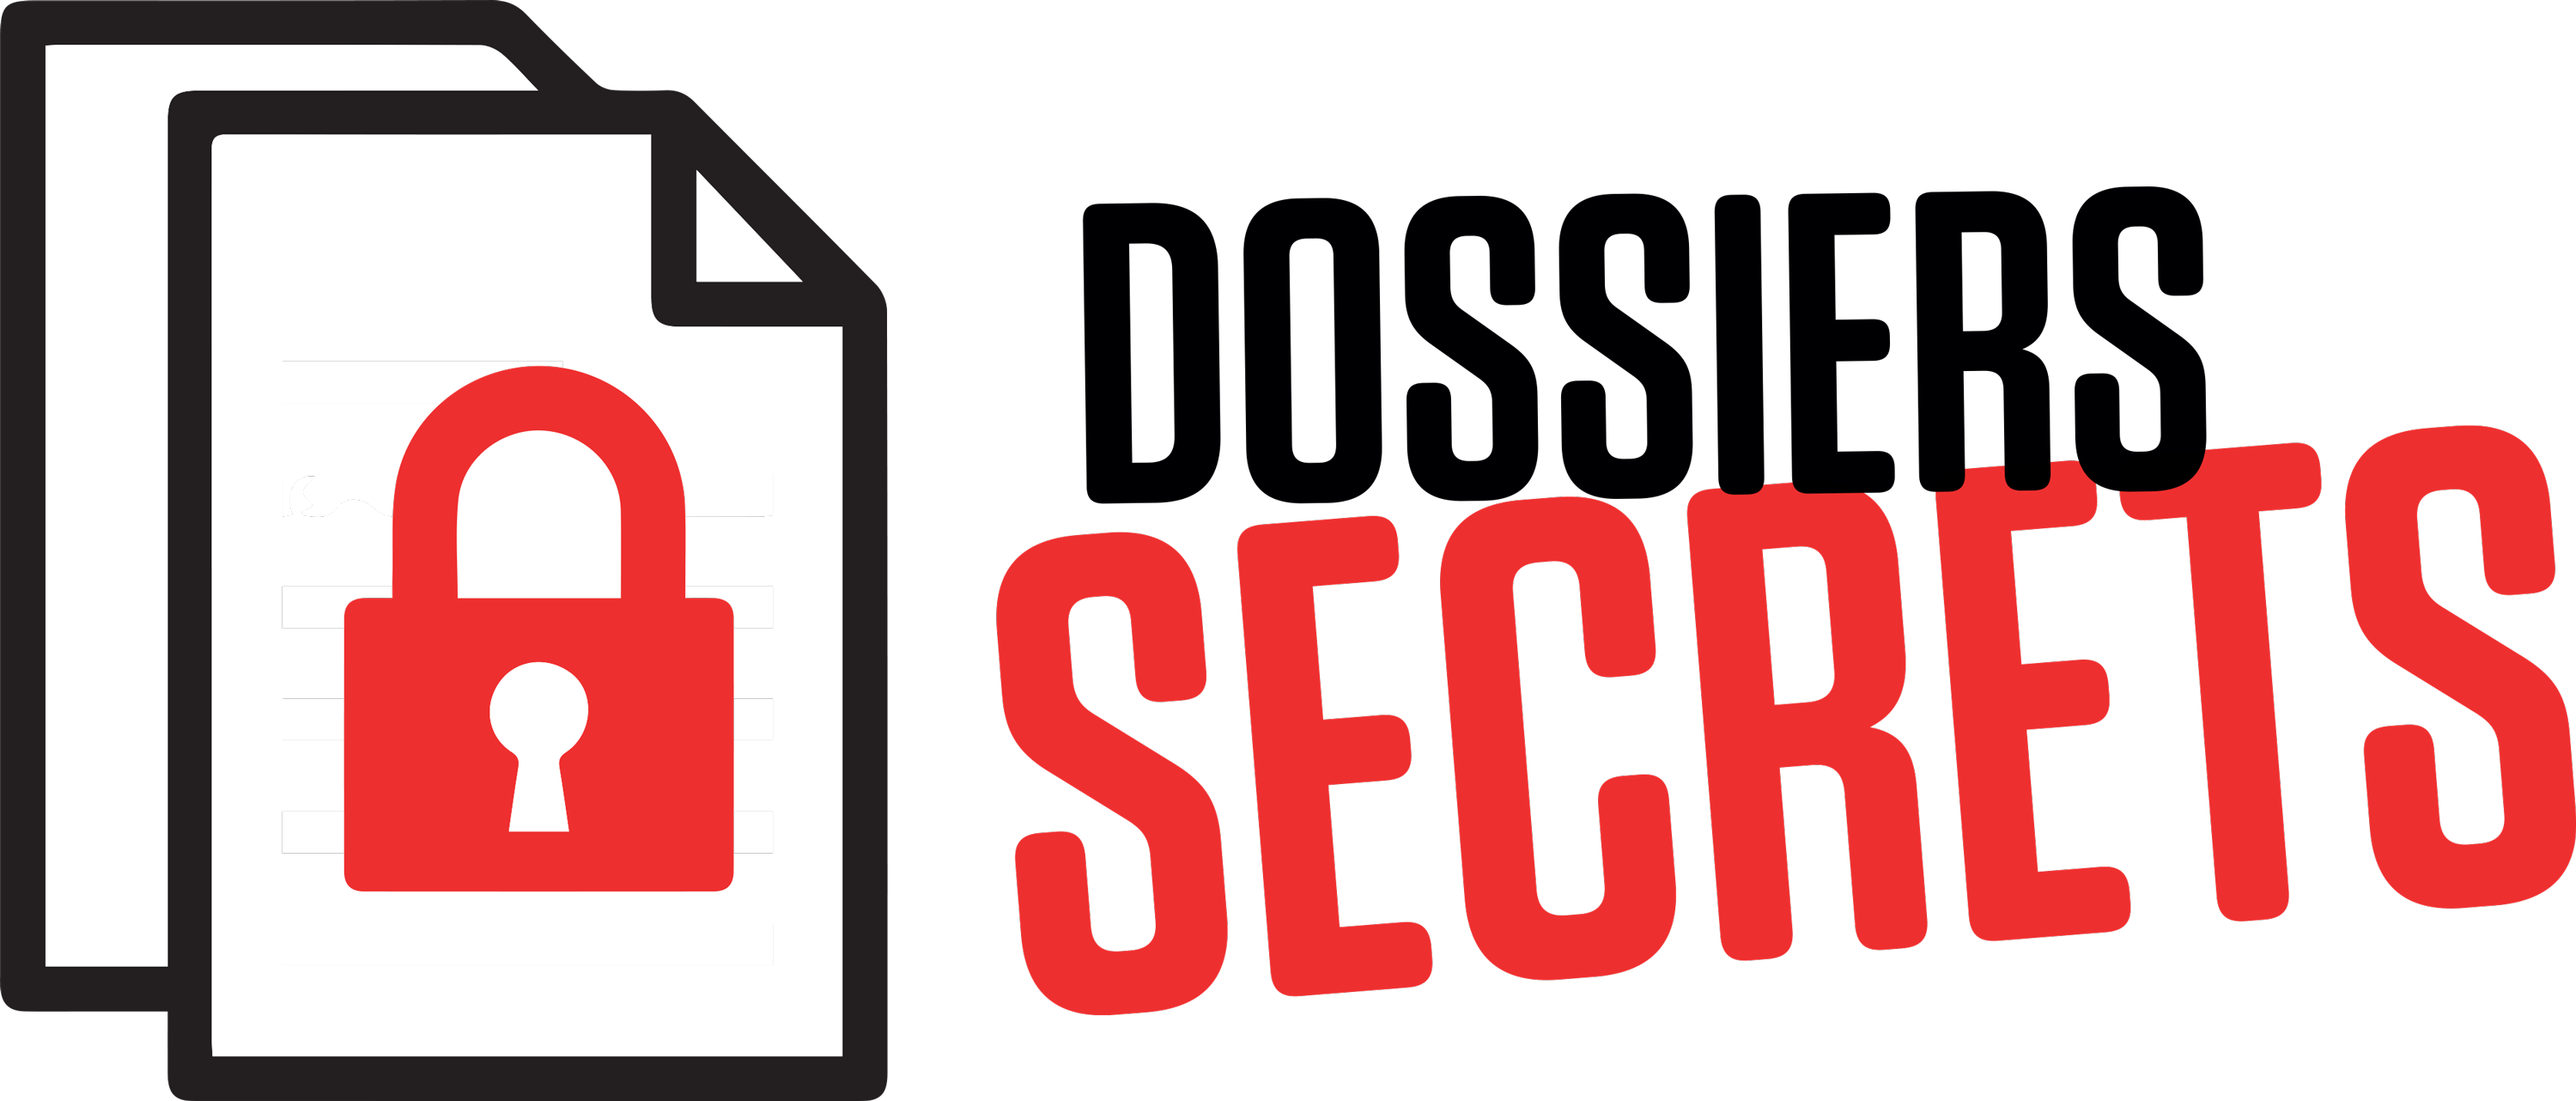 Dossiers secrets tva nouvelles. Secret clipart top secret